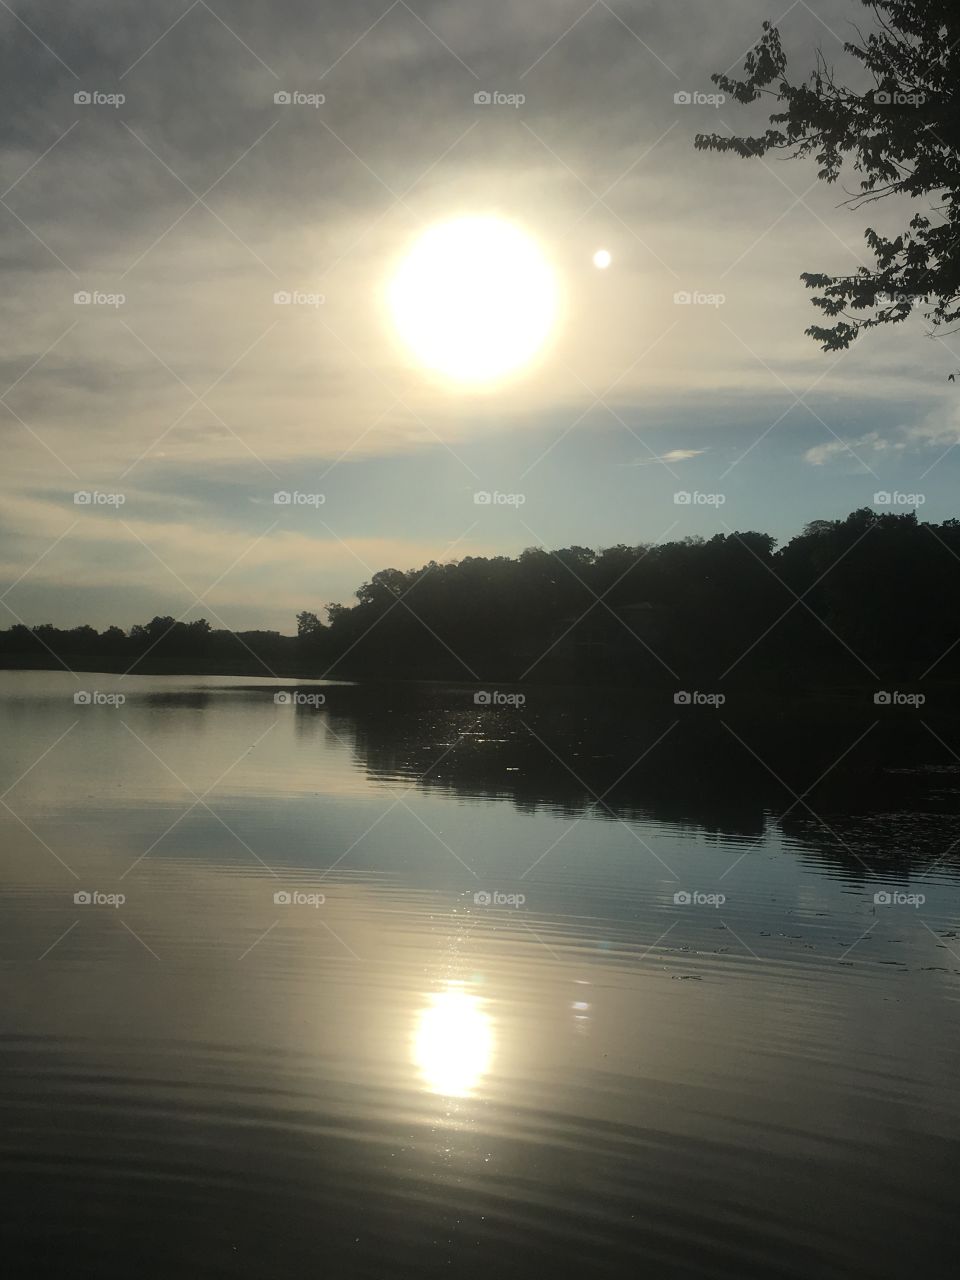 Sunset at spirit lake